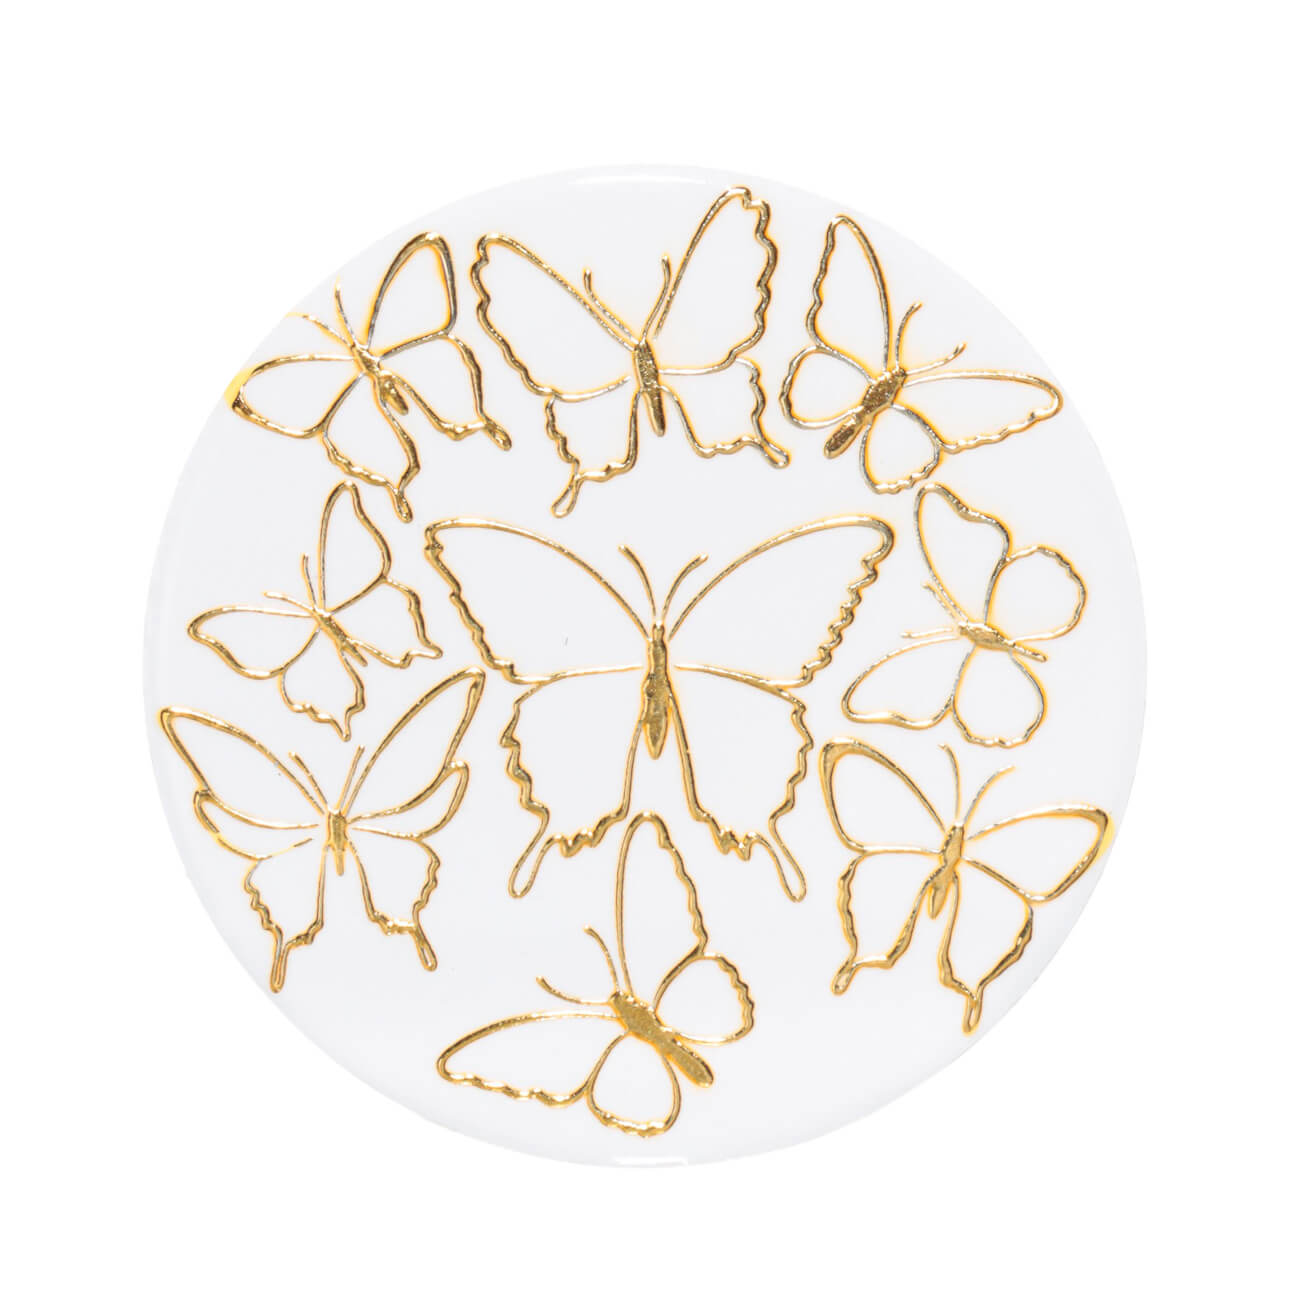 Подставка под кружку, 11 см, керамика/пробка, круглая, белая, Золотистые бабочки, Butterfly раскраска а4 бабочки 16стр с наклейками